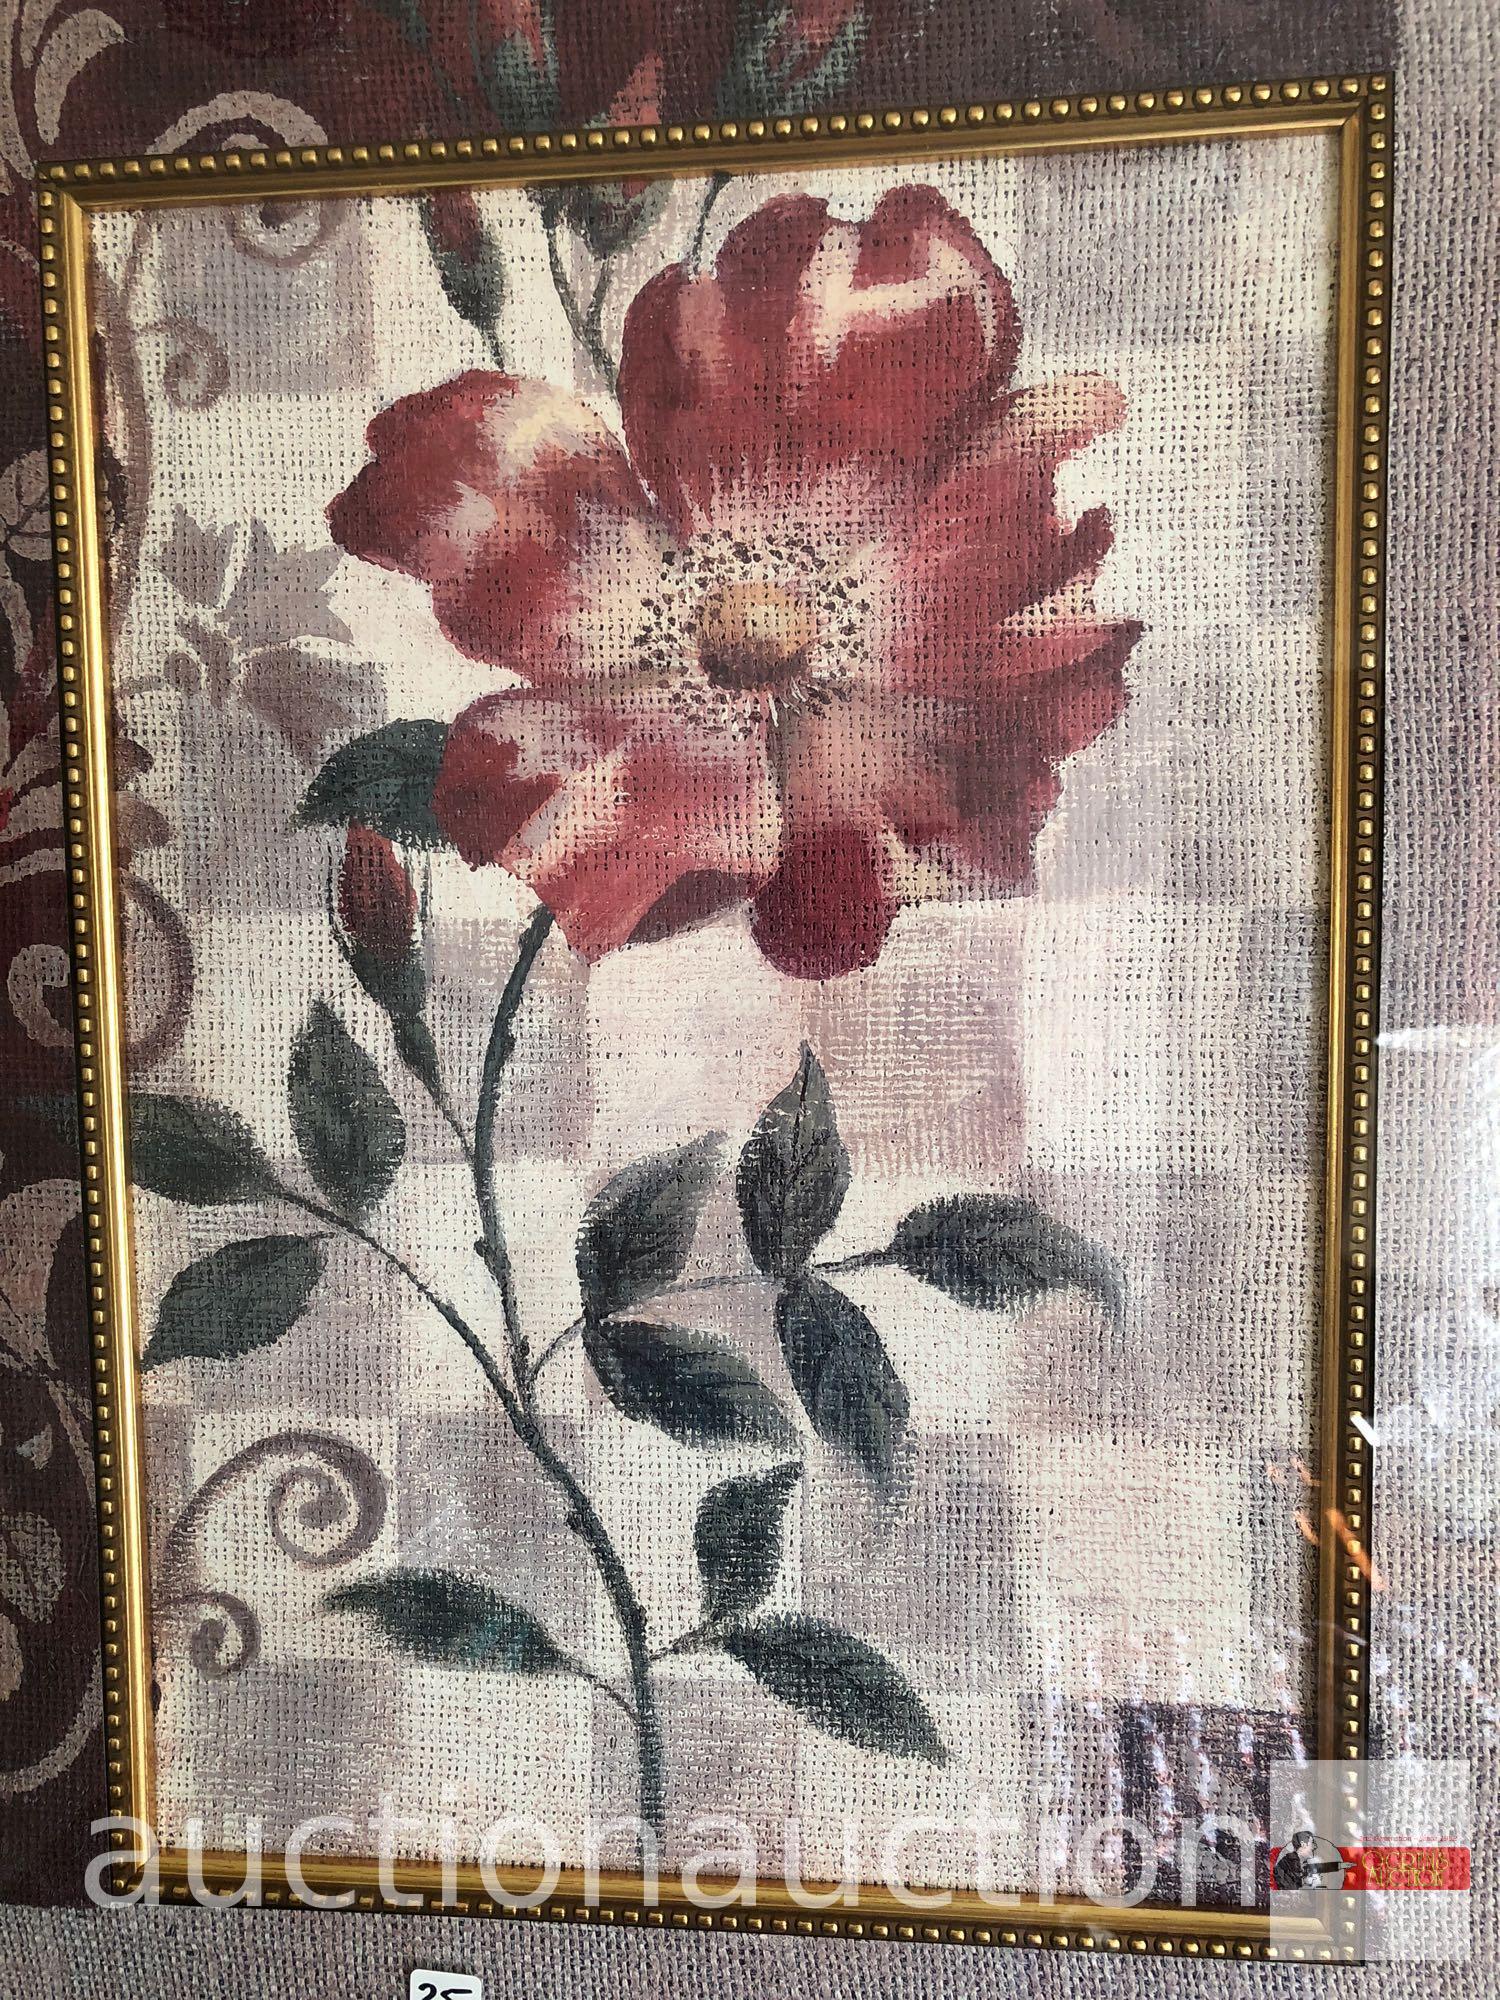 Artwork - print, floral by Vivian Flasch, framed & matted, 27"wx32.5"hx1.5"d